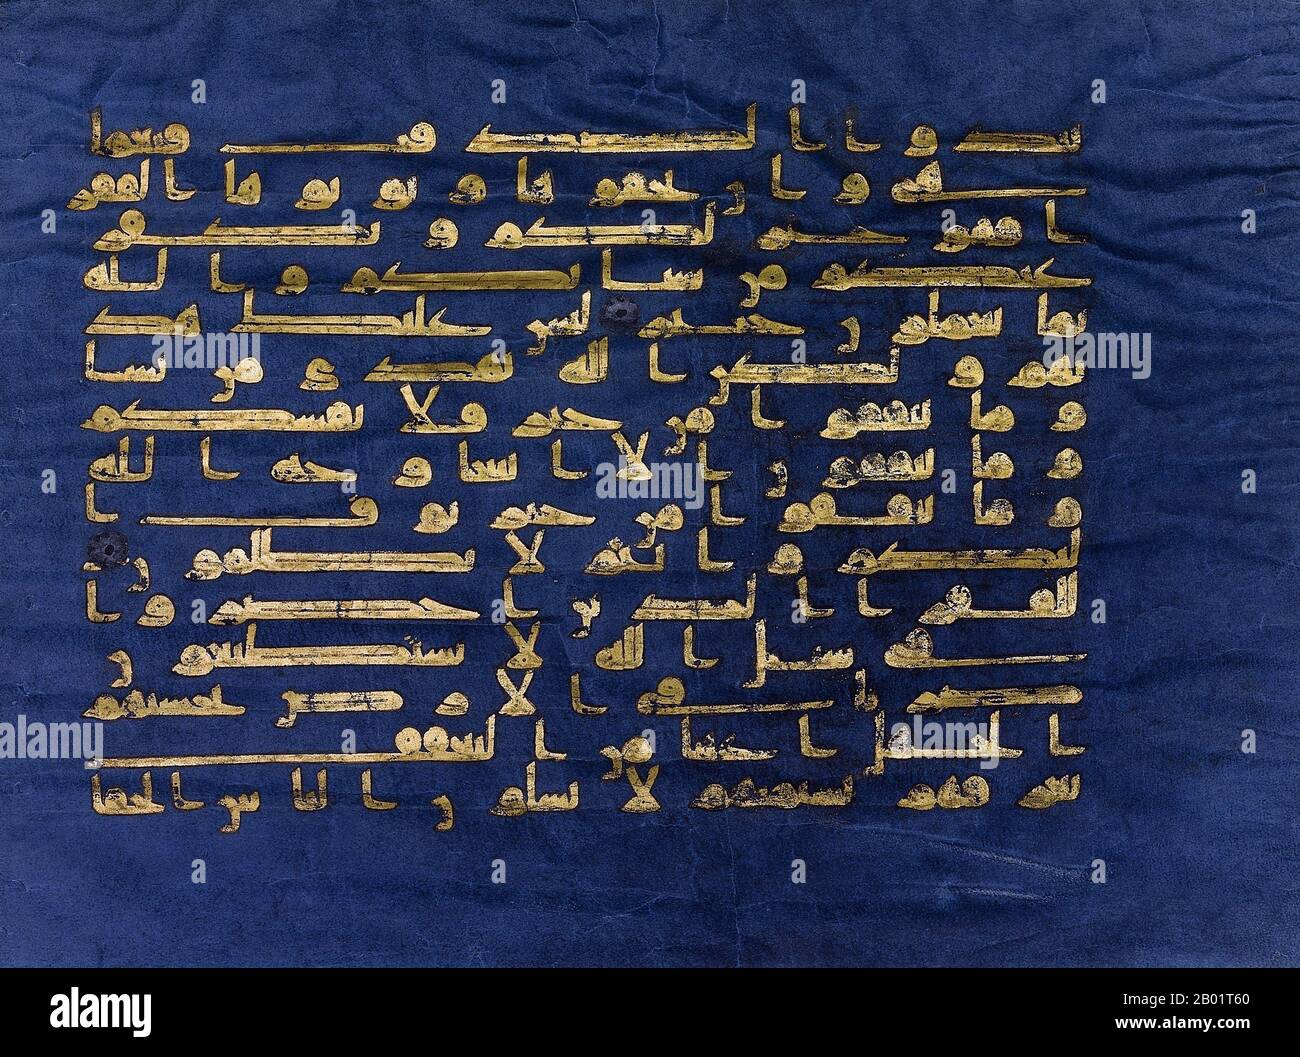 Tunesien: Surah al-Baqarah, Verse 197-201, in kufischer Schrift. Aus dem „Blauen Koran“, Qairawan, Tunesien, um 1000 n. Chr. Der Blaue Koran ist eine tunesische Koran-Manuskript aus dem späten 9. Bis frühen 10. Jahrhundert in kufischer Kalligraphie. Es ist in Gold geschrieben (Chrysographie) auf Pergament gestorben mit Indigo, ein einzigartiger Aspekt. Es gehört zu den berühmtesten Werken islamischer Kunst und wurde als „eines der außergewöhnlichsten Luxusmanuskripte aller Zeiten“ bezeichnet. Das Manuskript wurde während der Osmanischen Zeit verstreut; heute befindet sich das meiste im Nationalen Institut für Kunst und Archäologie in Tunis. Stockfoto